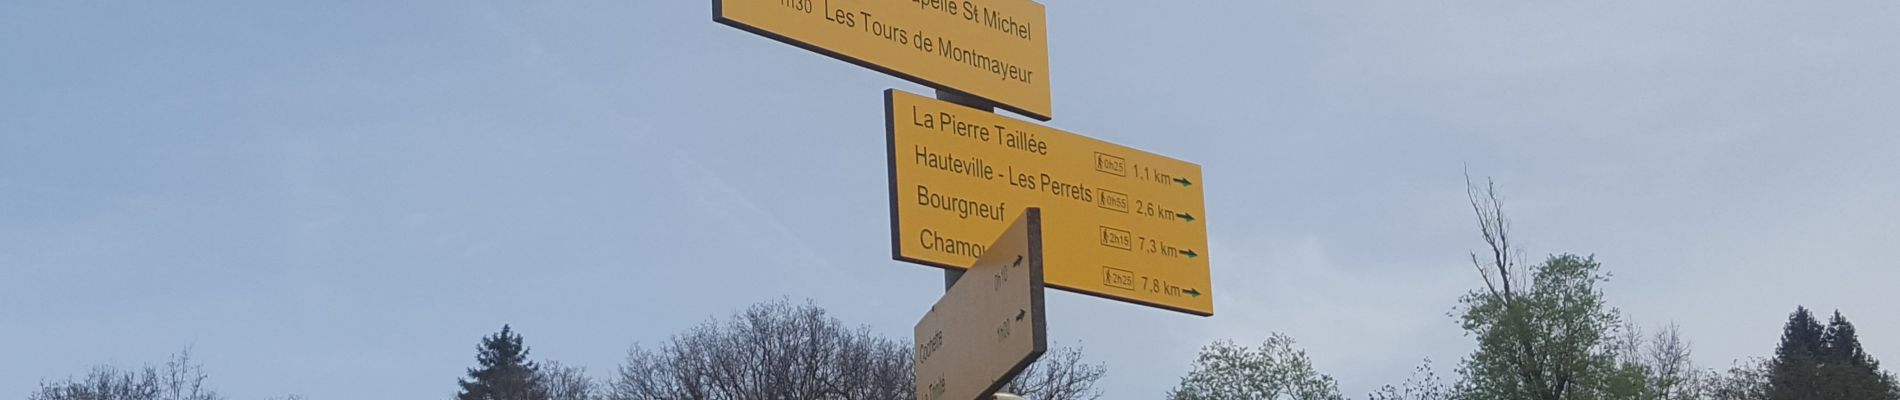 Percorso Marcia La Trinité - Les Tours de Montmayeur au départ de la Trinité via col de Cochette - Photo